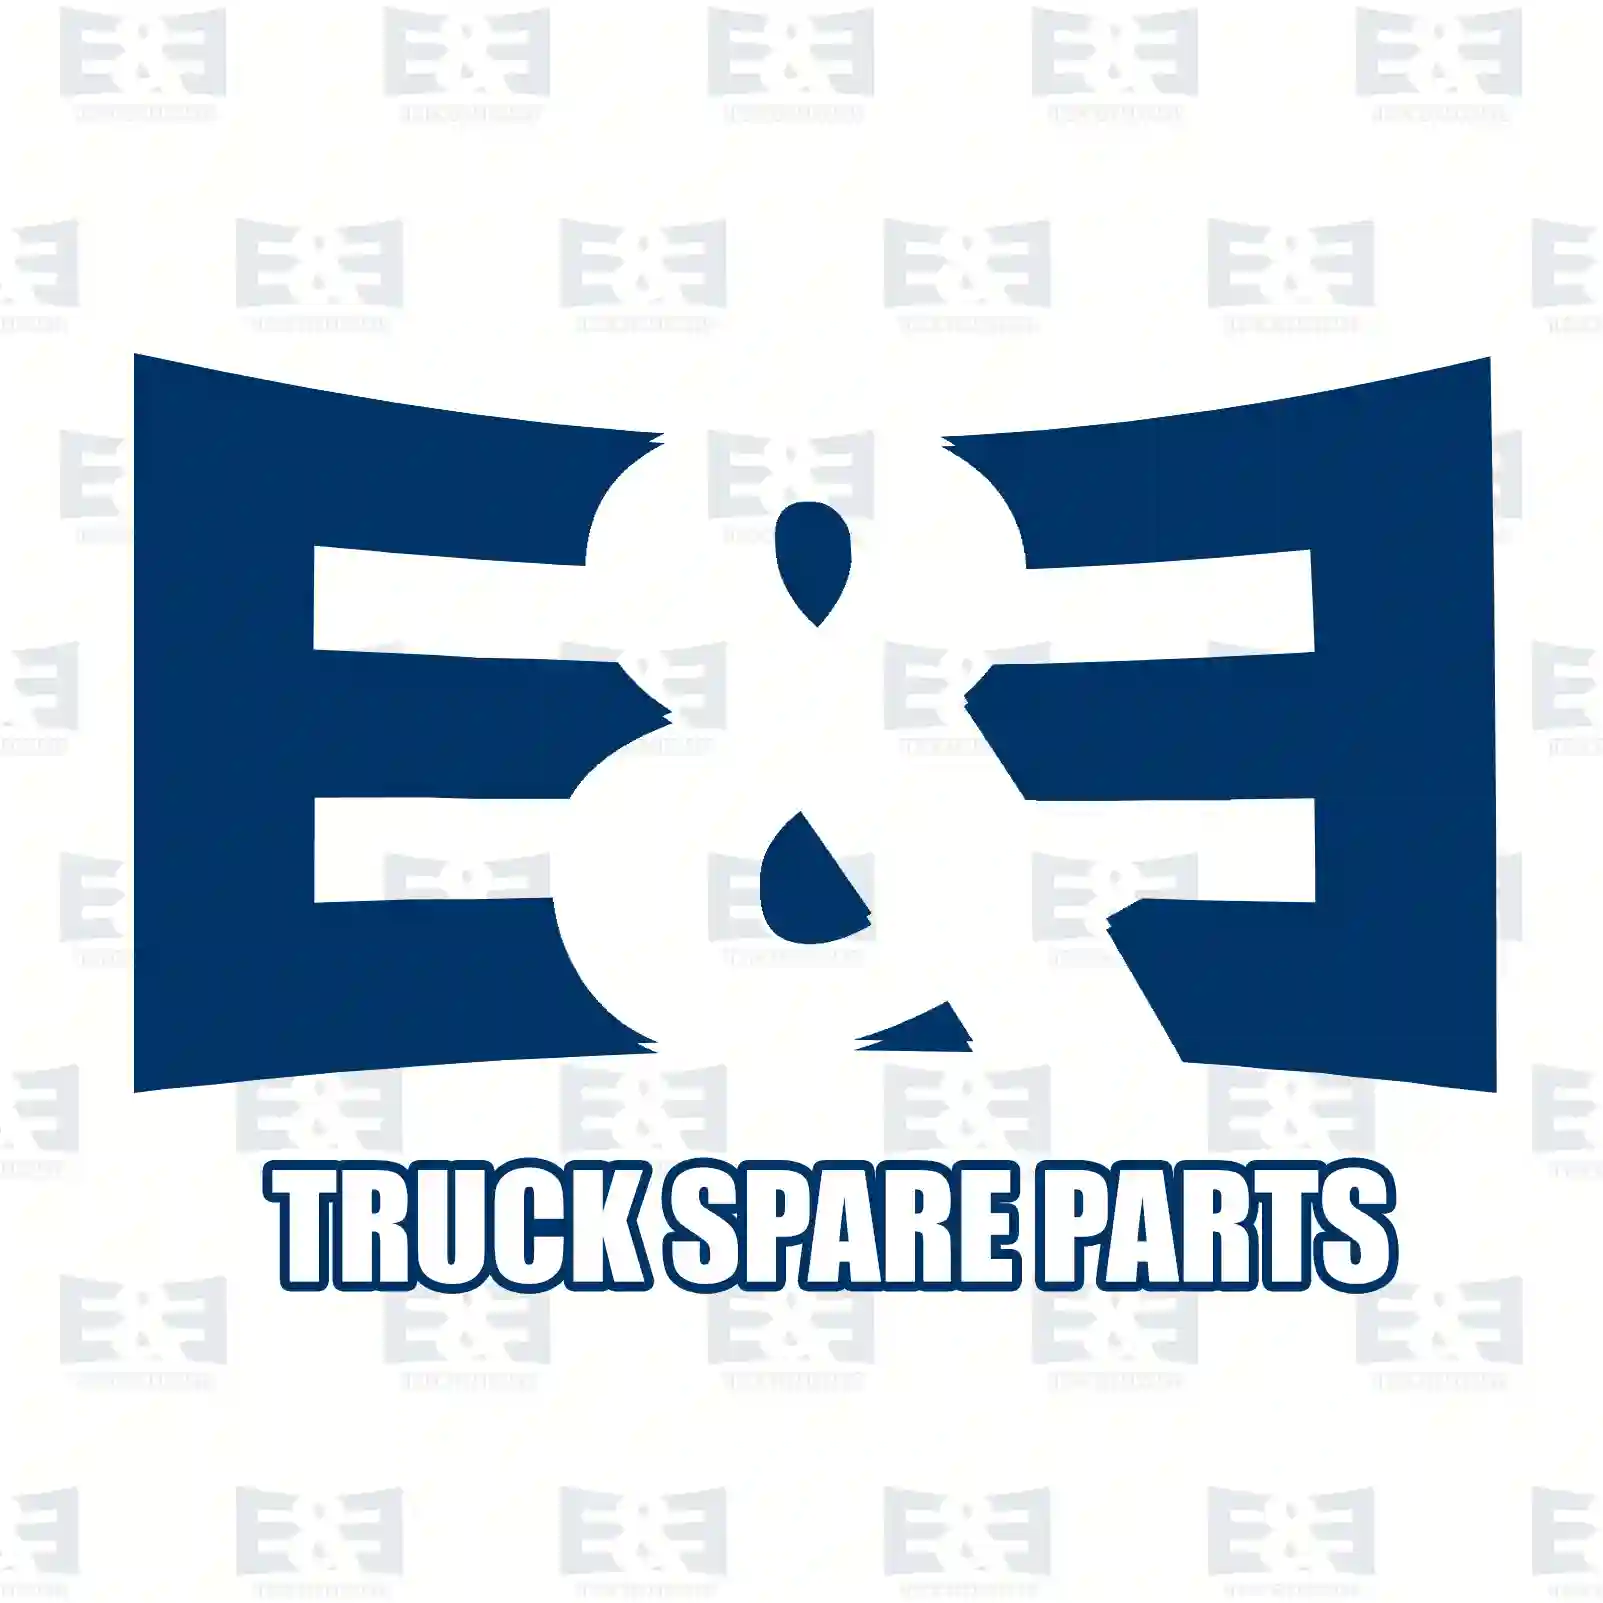 Condenser, 2E2276363, 20515134, 20838905, 21086309, 3980841 ||  2E2276363 E&E Truck Spare Parts | Truck Spare Parts, Auotomotive Spare Parts Condenser, 2E2276363, 20515134, 20838905, 21086309, 3980841 ||  2E2276363 E&E Truck Spare Parts | Truck Spare Parts, Auotomotive Spare Parts